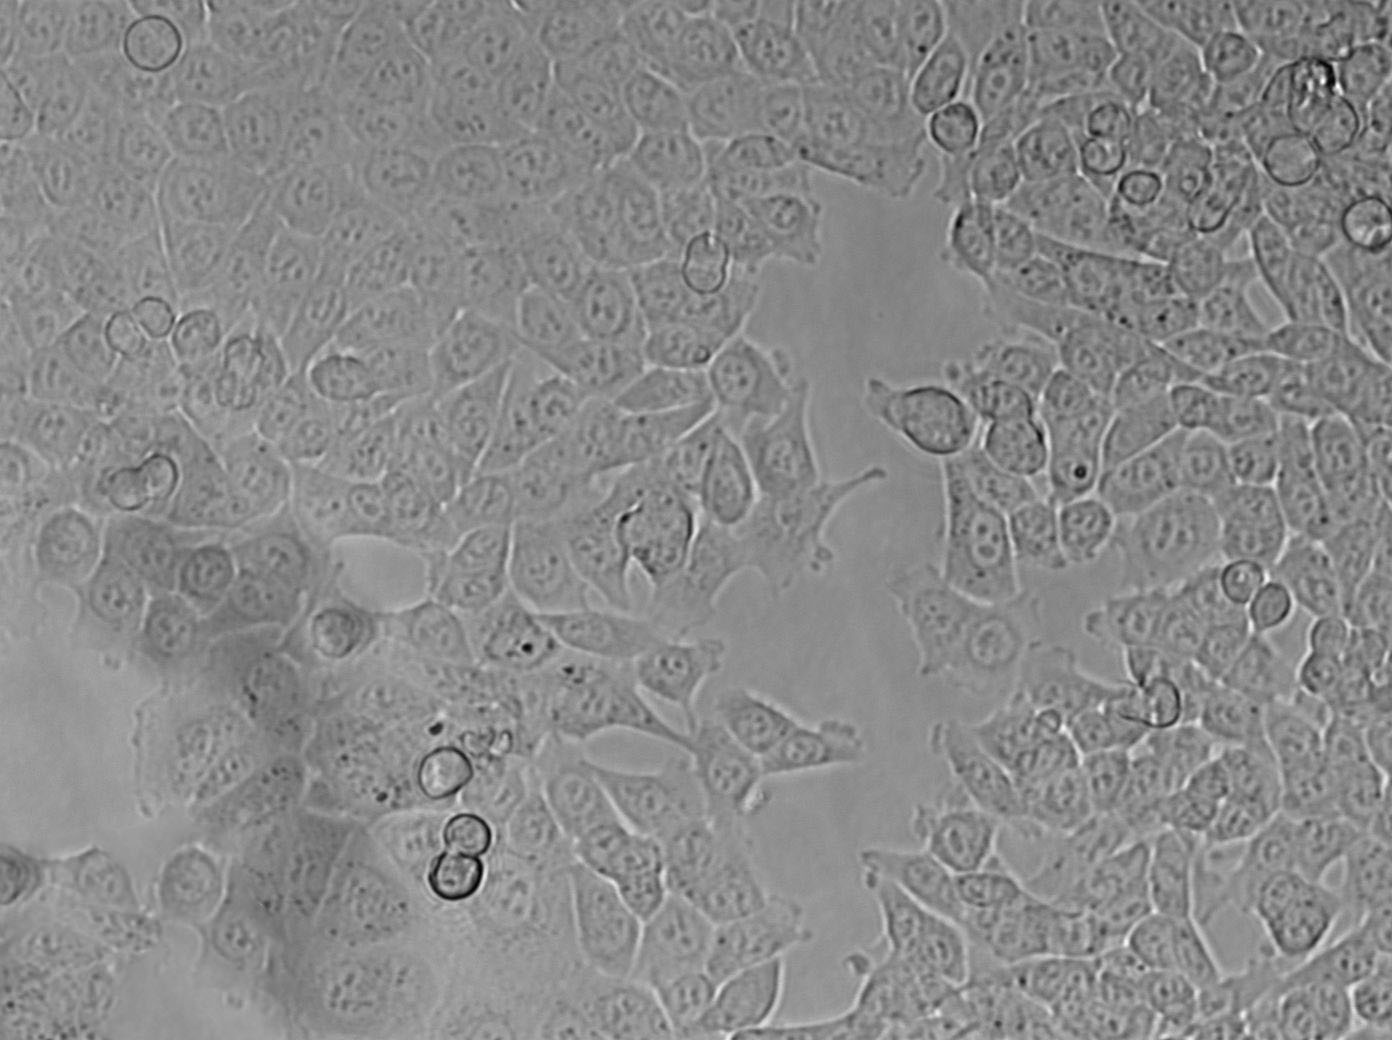 NCI-H676B Cell|人肺腺癌细胞,NCI-H676B Cell